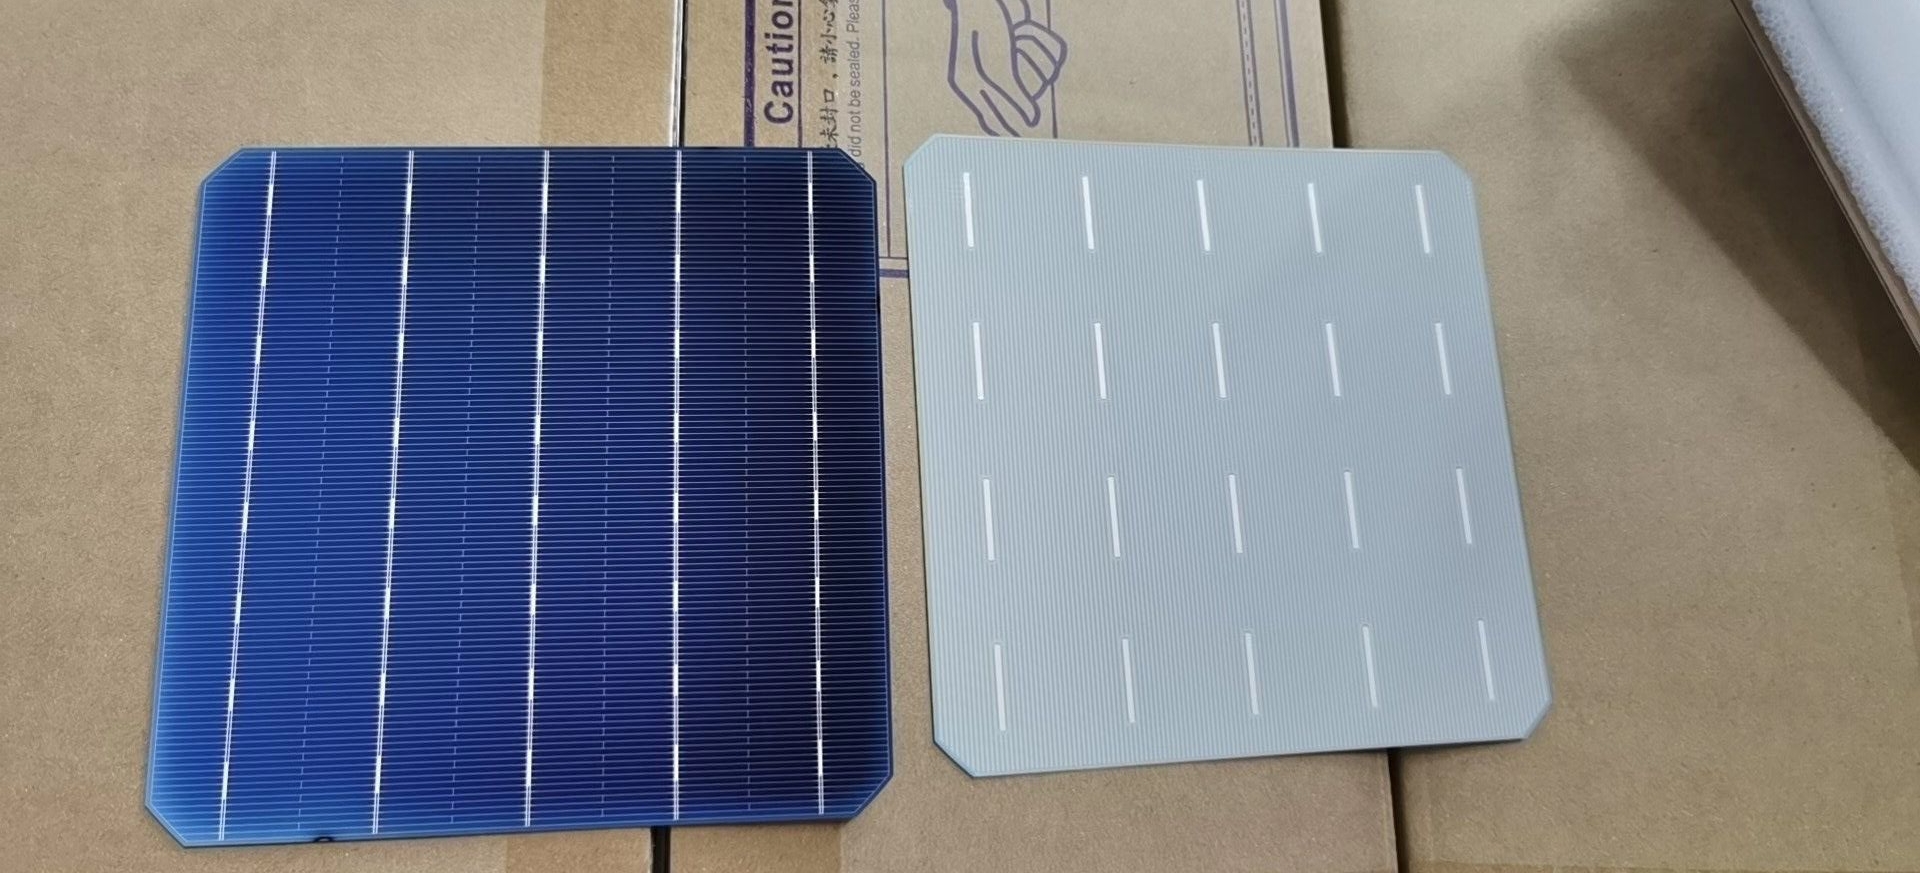 100pcs 21% efficiency 6x6 Monocrystalline solar cells